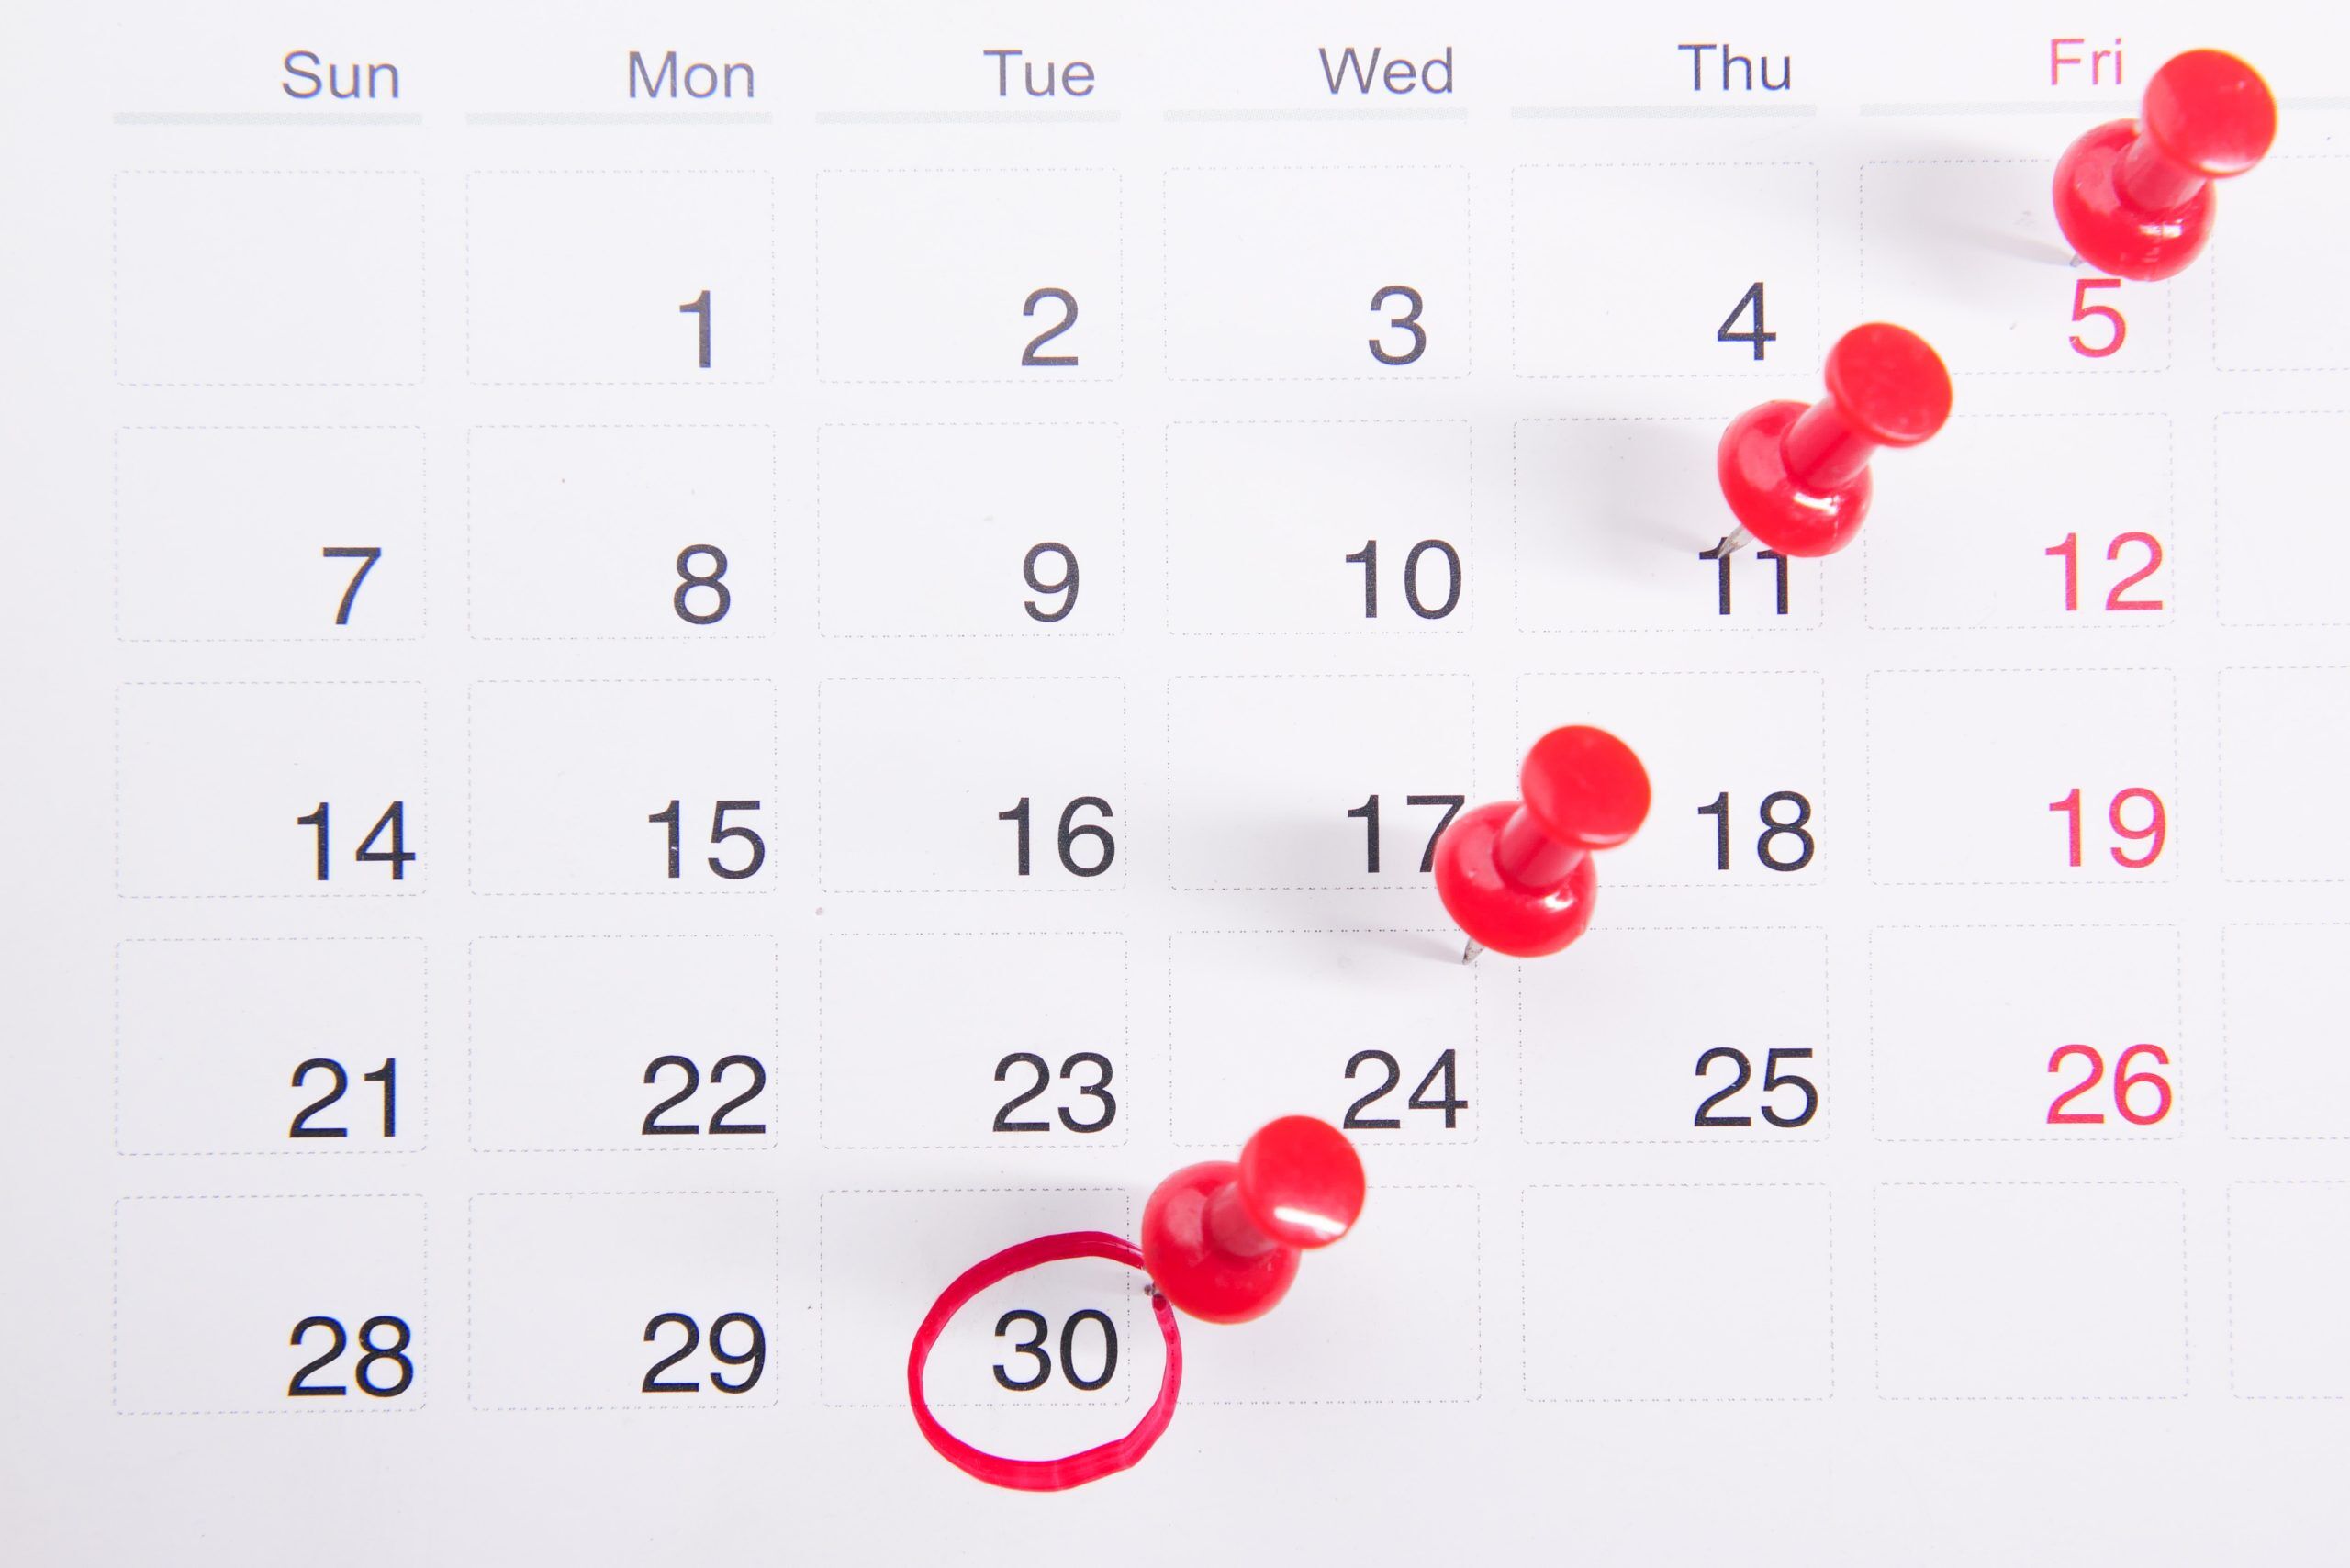 Criar um calendário para o seu conteúdo te ajuda na organização e visualização do seu planejamento